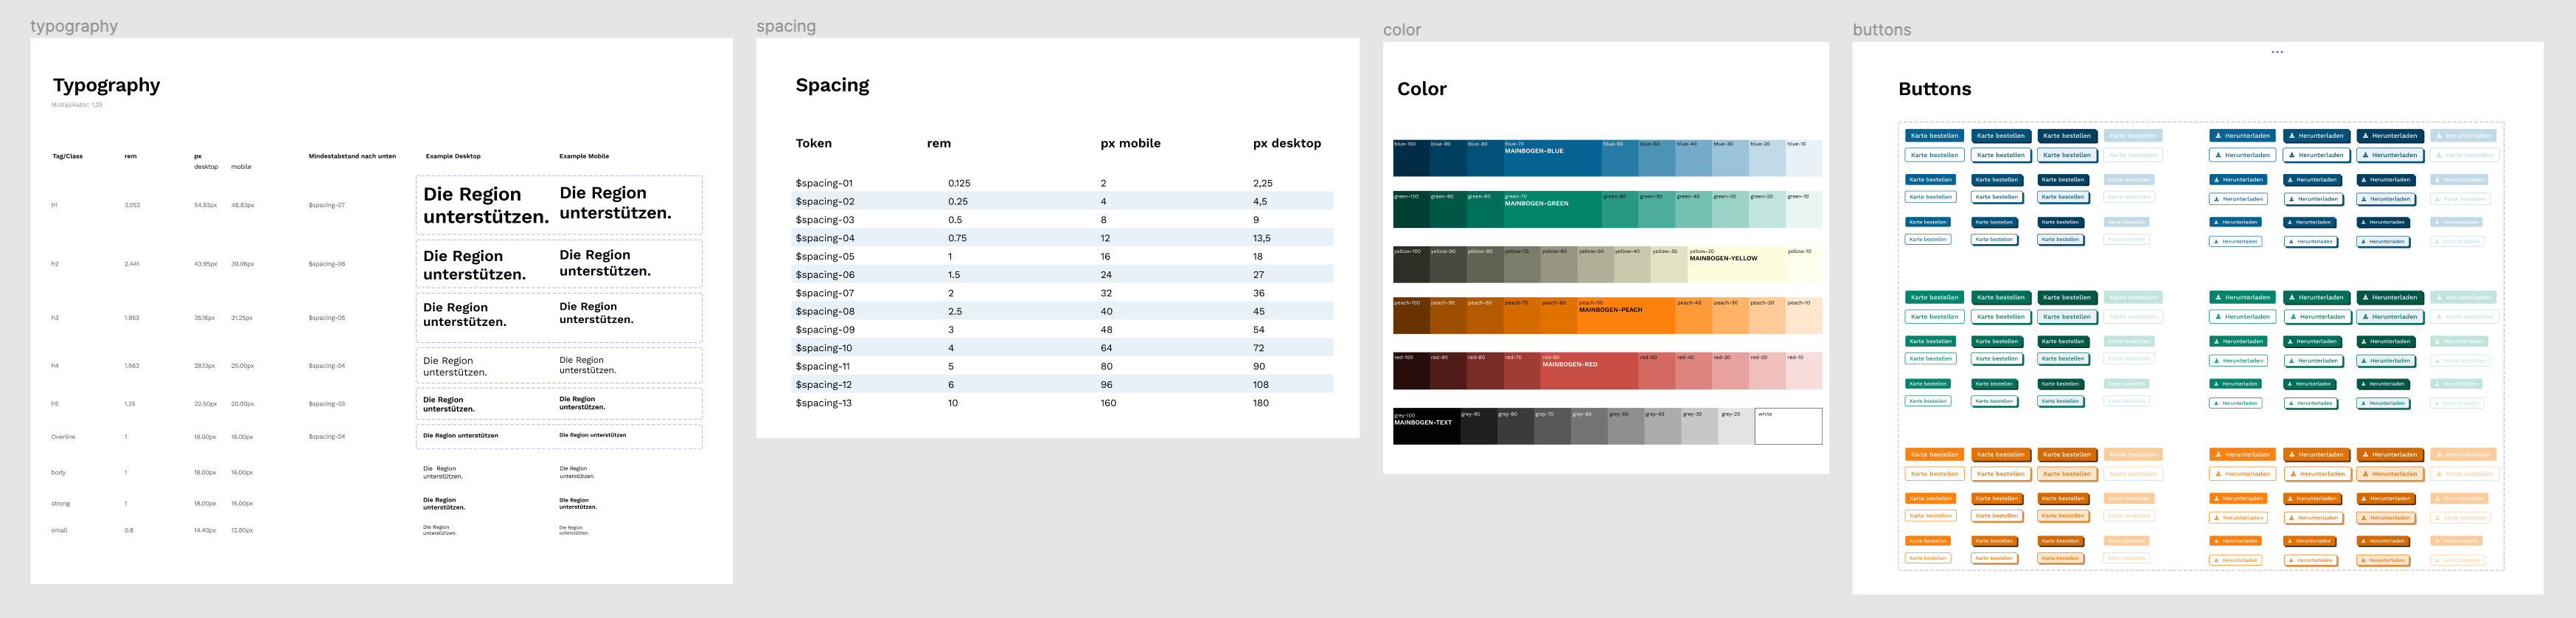 Dokumentation des Designsystems mit Definitionen von Typografie, Farben, Abständen und Buttons